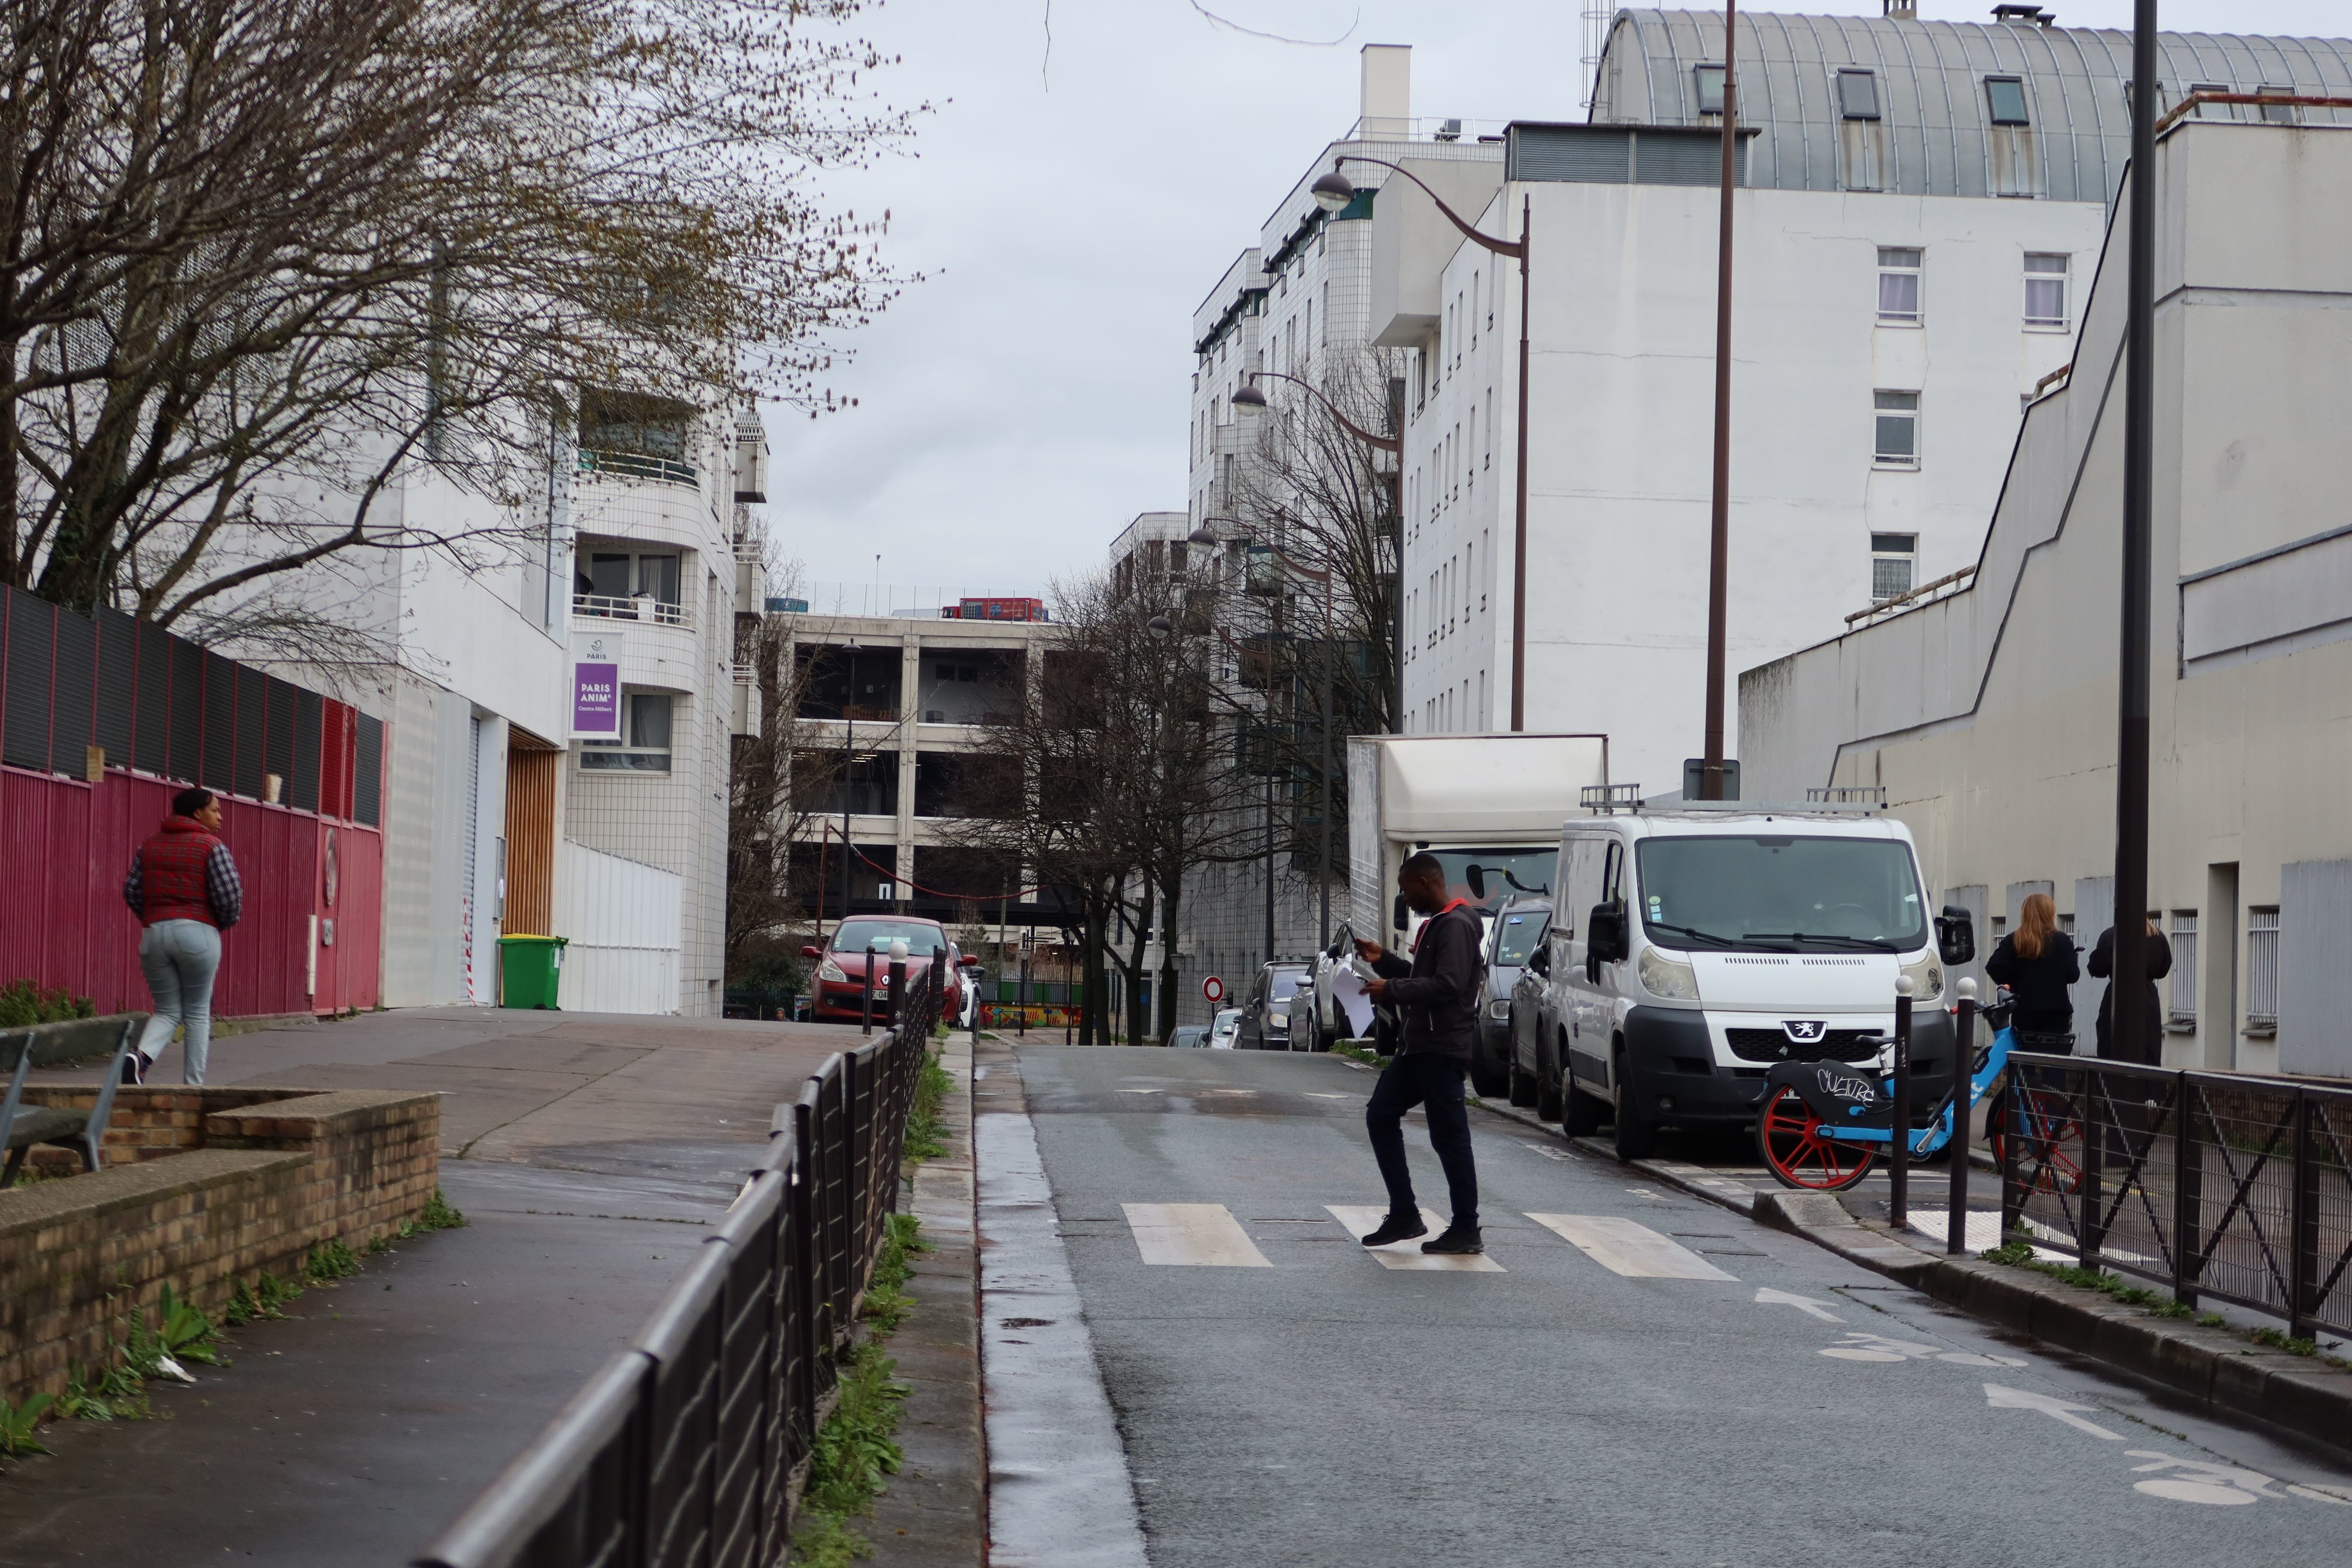 Paris, rue de Tchaïkovski (XVIIIe), ce mercredi. C'est au niveau du passage piéton que la victime s'est effondrée après avoir été poignardé à l'abdomen.